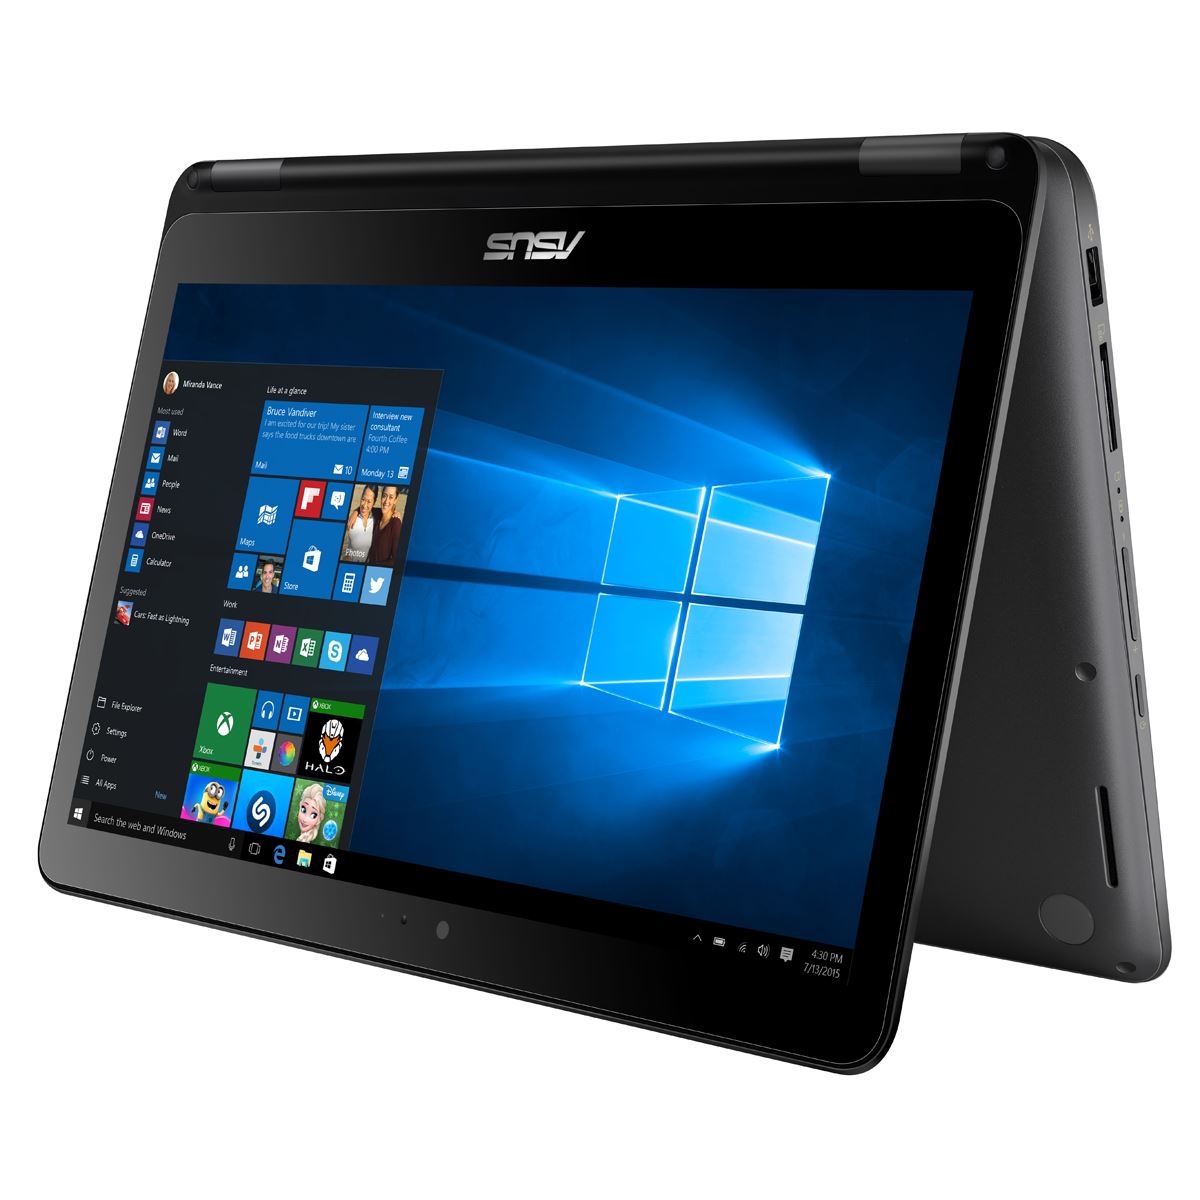 Laptop 13.3" Asus Vivobook Flip TP301UA-DW080T